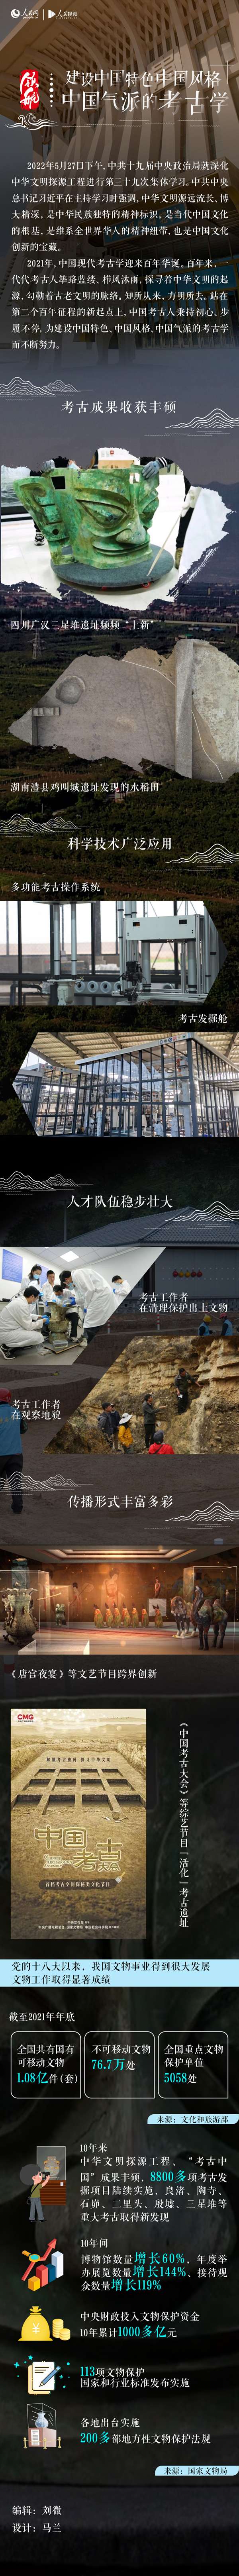 建设中国特色中国风格中国气派的考古学1.jpg